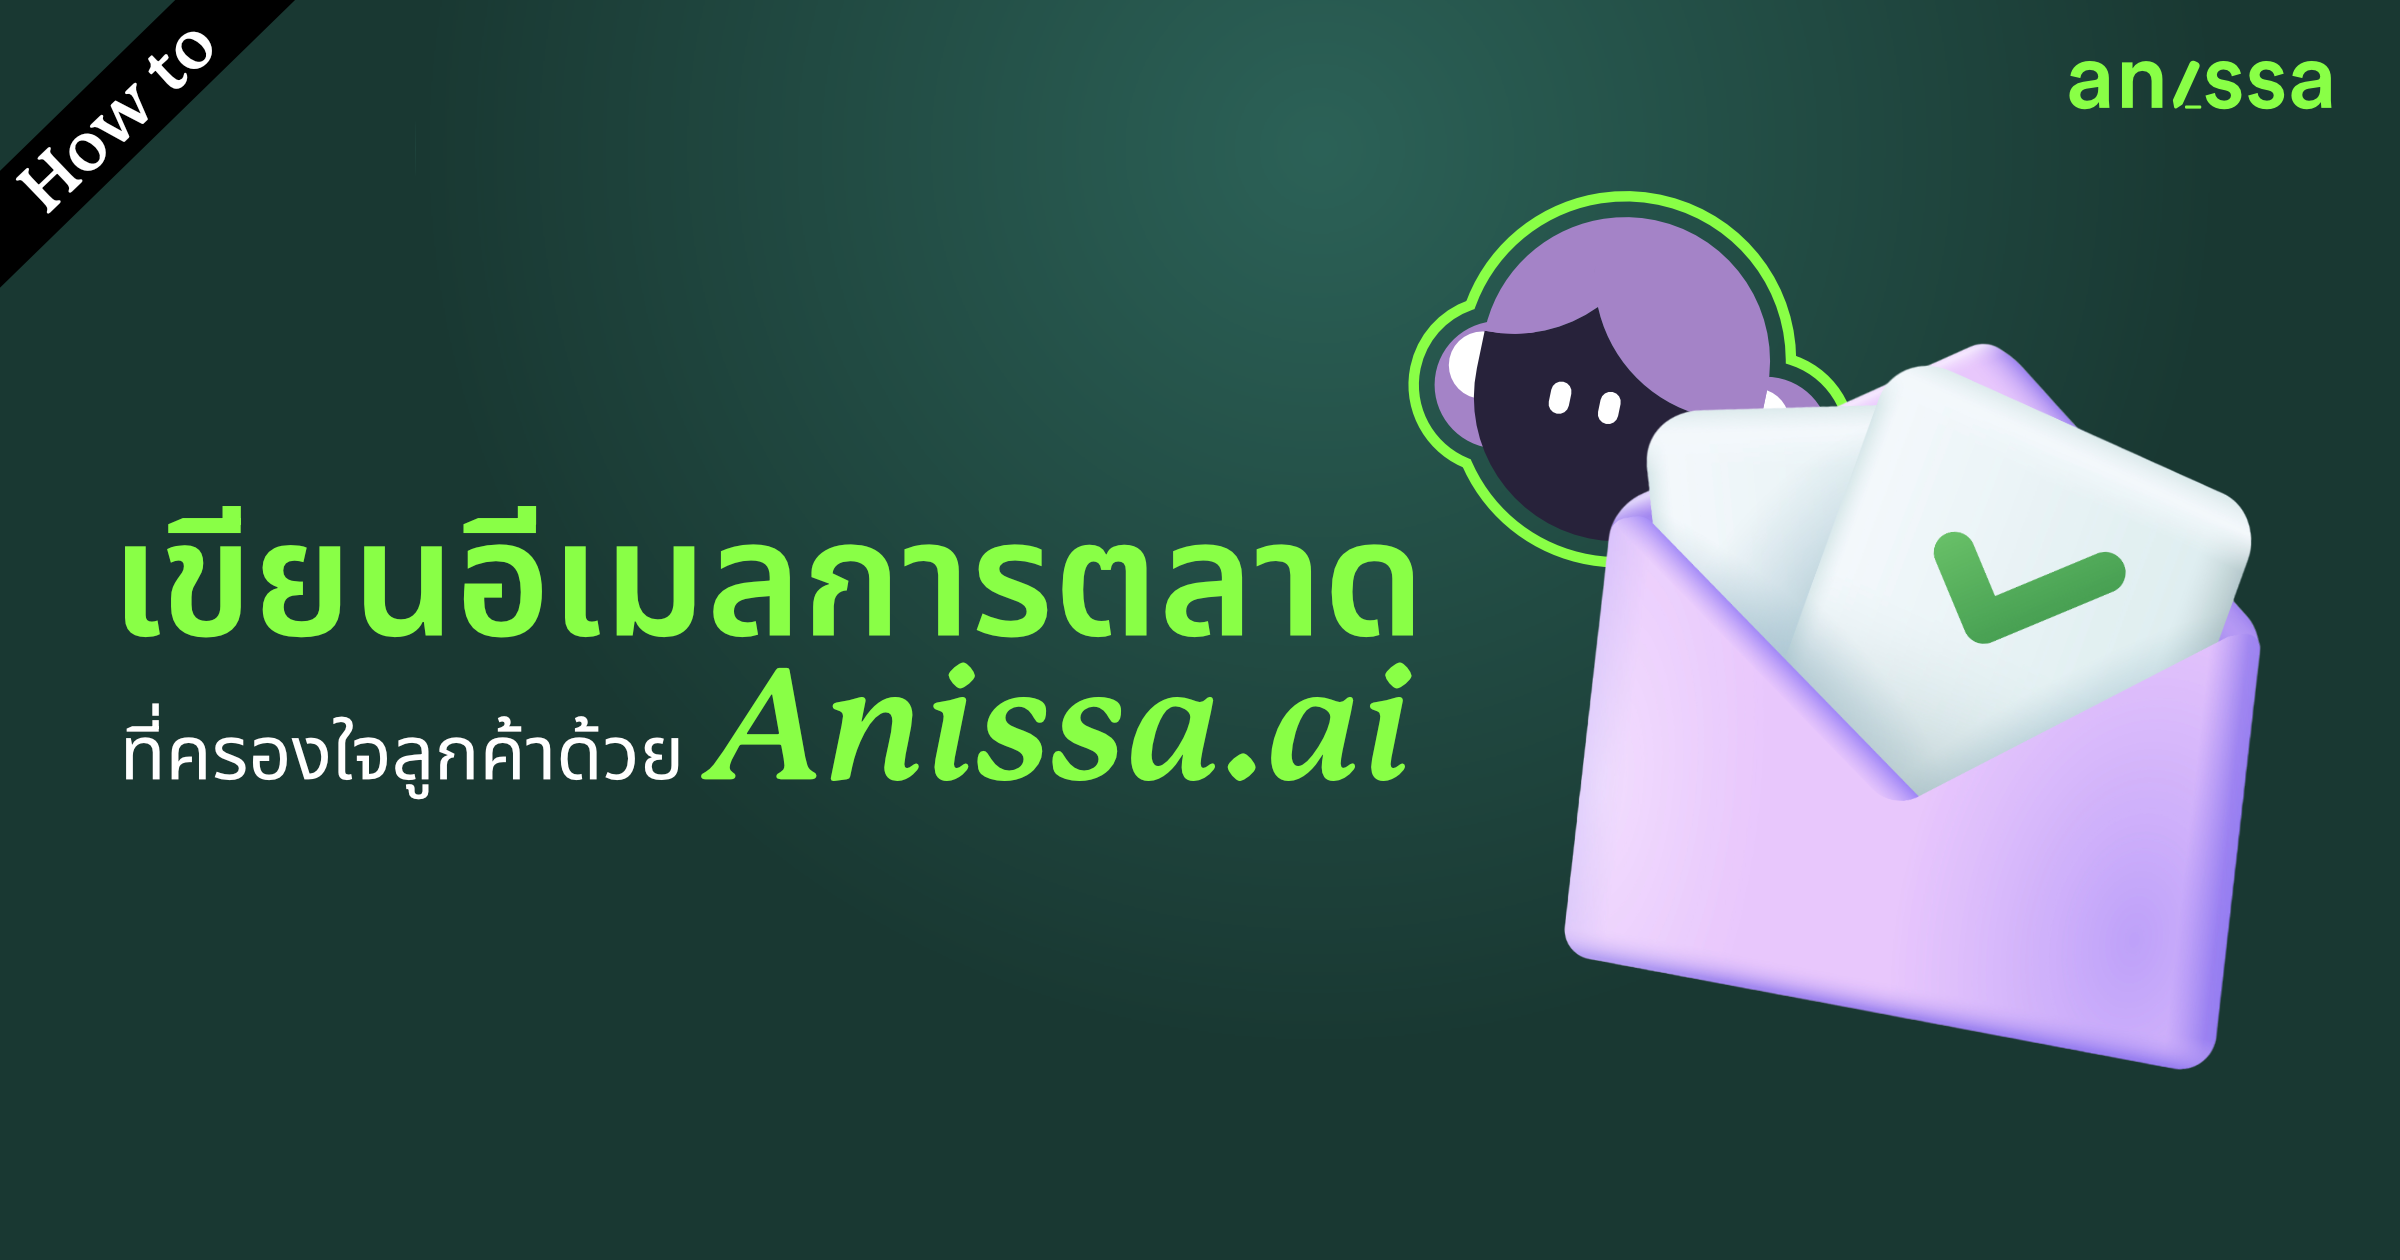 How to เขียนอีเมลการตลาดที่ครองใจลูกค้าด้วย Anissa.ai